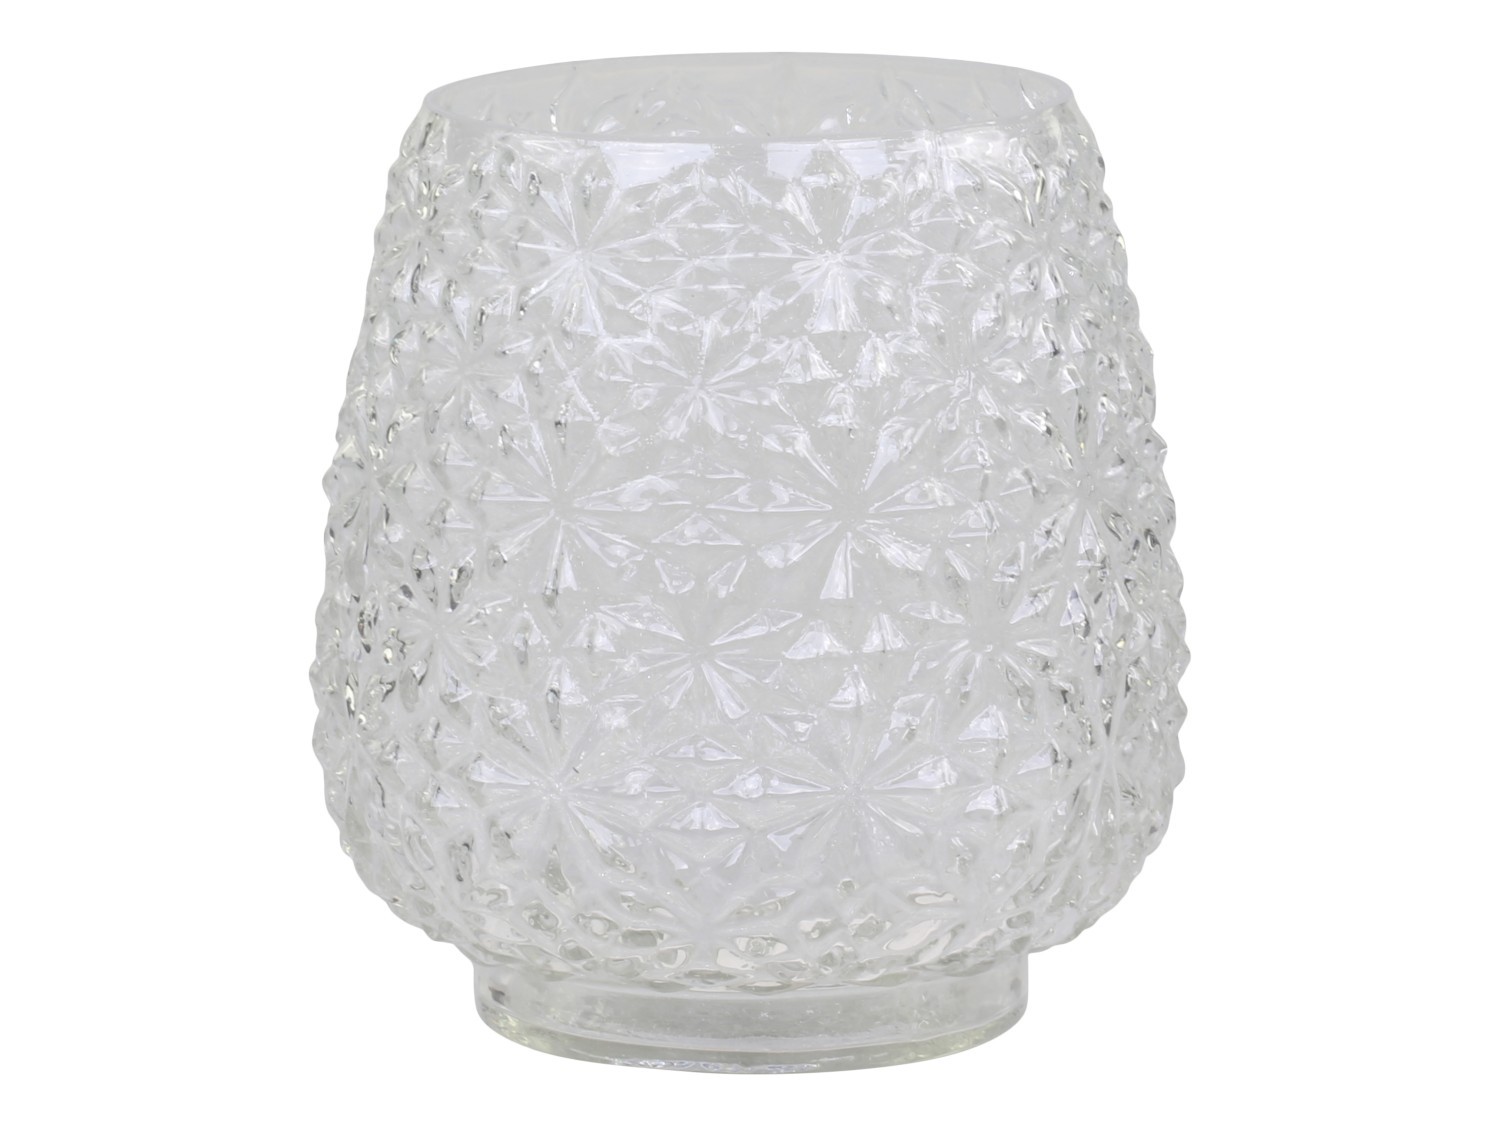 Transparentní skleněná dekorační váza / svícen Drea - Ø 14*15cm 74021500 (74215-00)